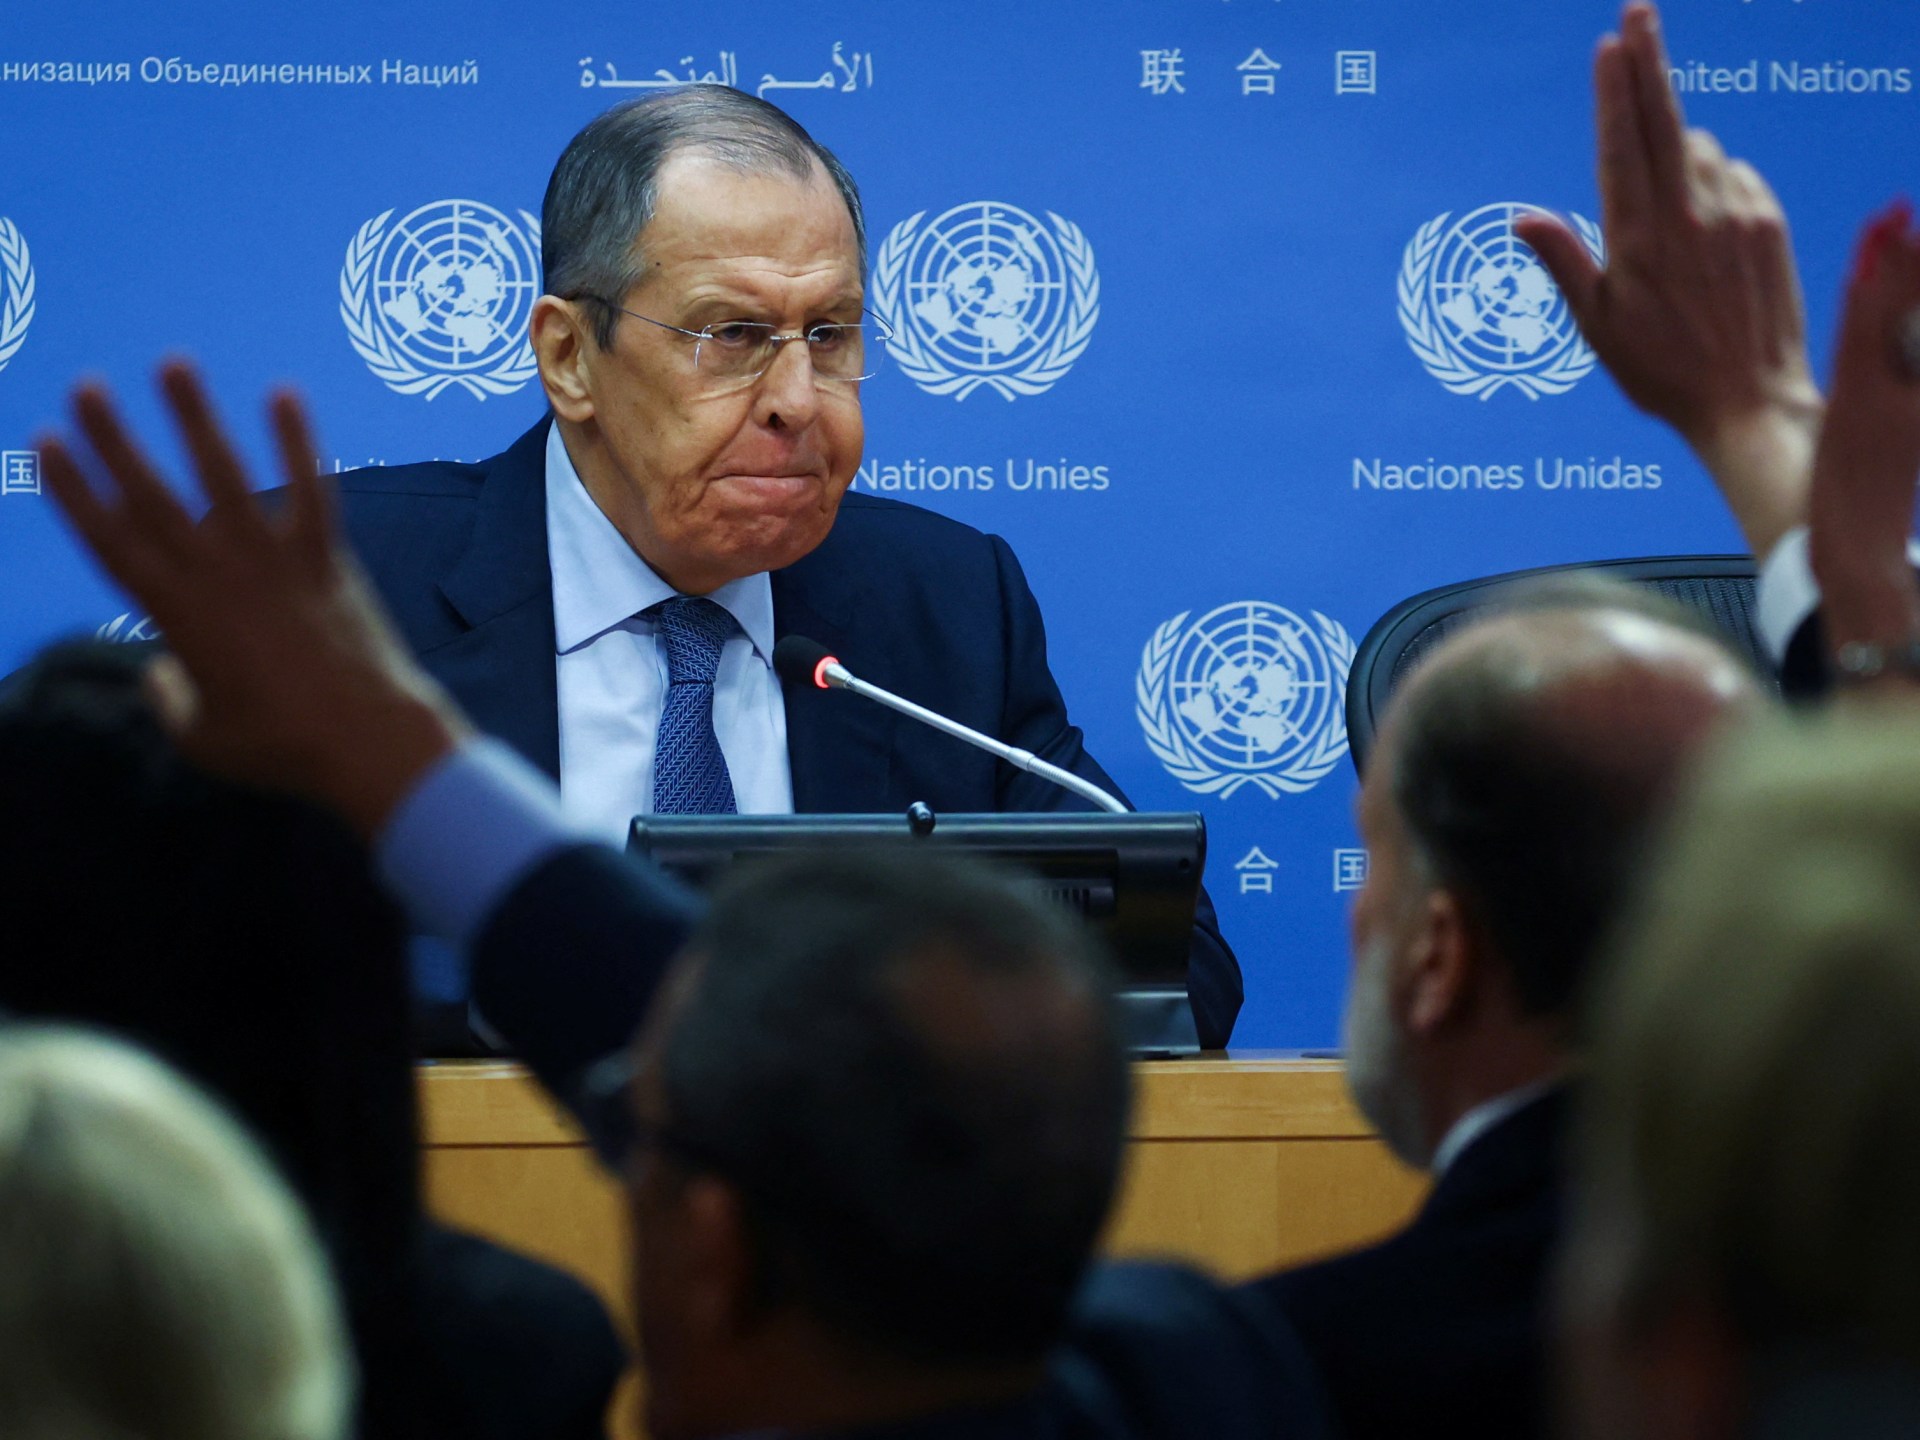 Lavrov Rusia memperingatkan militerisasi UE, kata serupa dengan NATO |  Berita